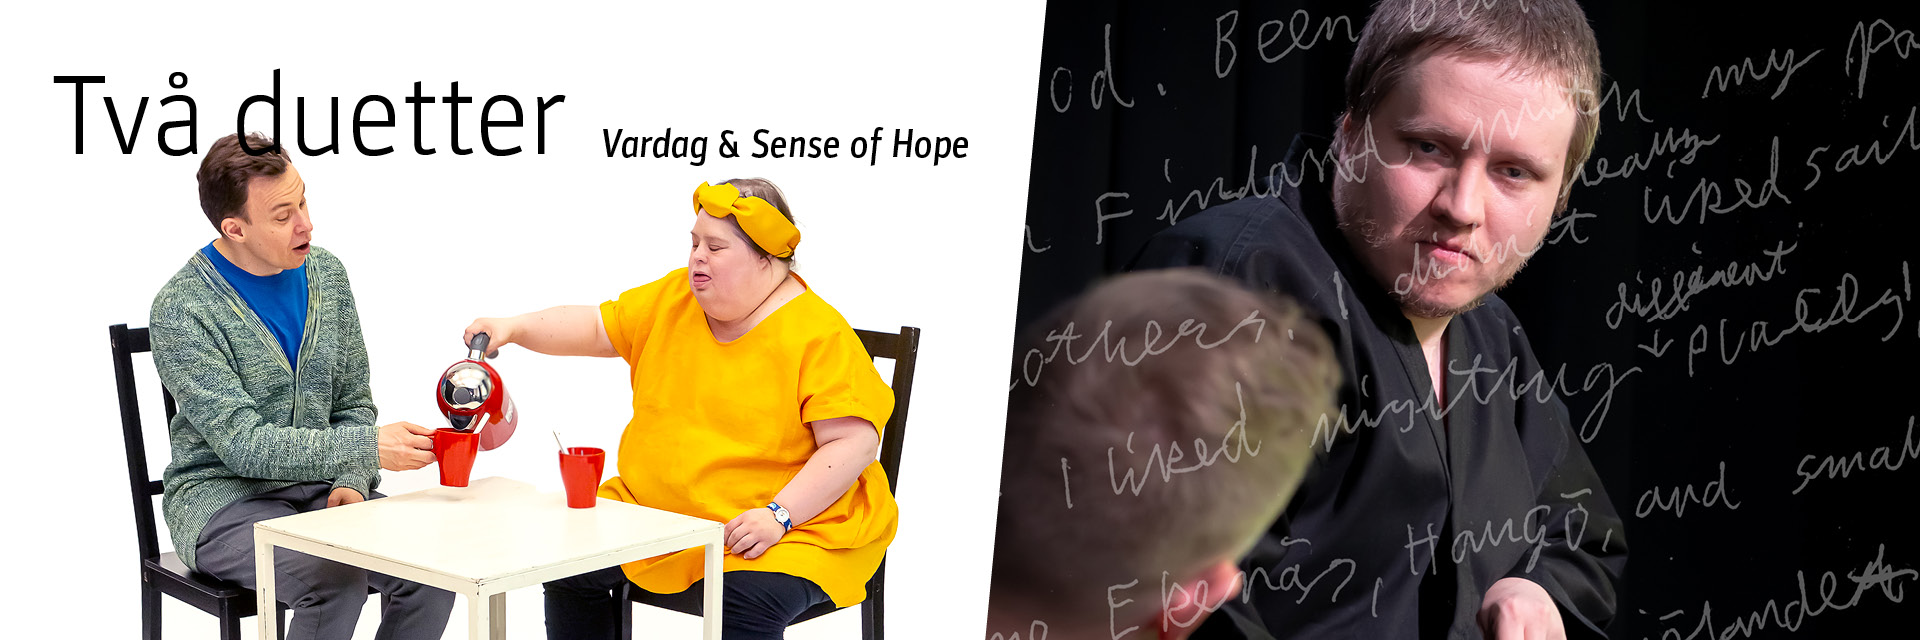 Ylätunnisteena toimiva kuva on jaettu kahteen osaan. Vasemmanpuoleisessa kuvassa mainostetaan Vardag-esitystä, jossa tanssija Carl Knif sekä DuvTeaternin näyttelijä Pia Renes viettävät tee-hetkeä istuen pöydän ääressä. Oikeanpuoleinen kuva edustaa Sense of Hope-esitystä, jossa DuvTeaternin tanssija Emil Nordman katsoo tanssijapariaan tuimana mustalla taustalla. Jälkimmäistä kuvaa koristaa himmeät otteet käsinkirjoitetusta päiväkirjasta. 